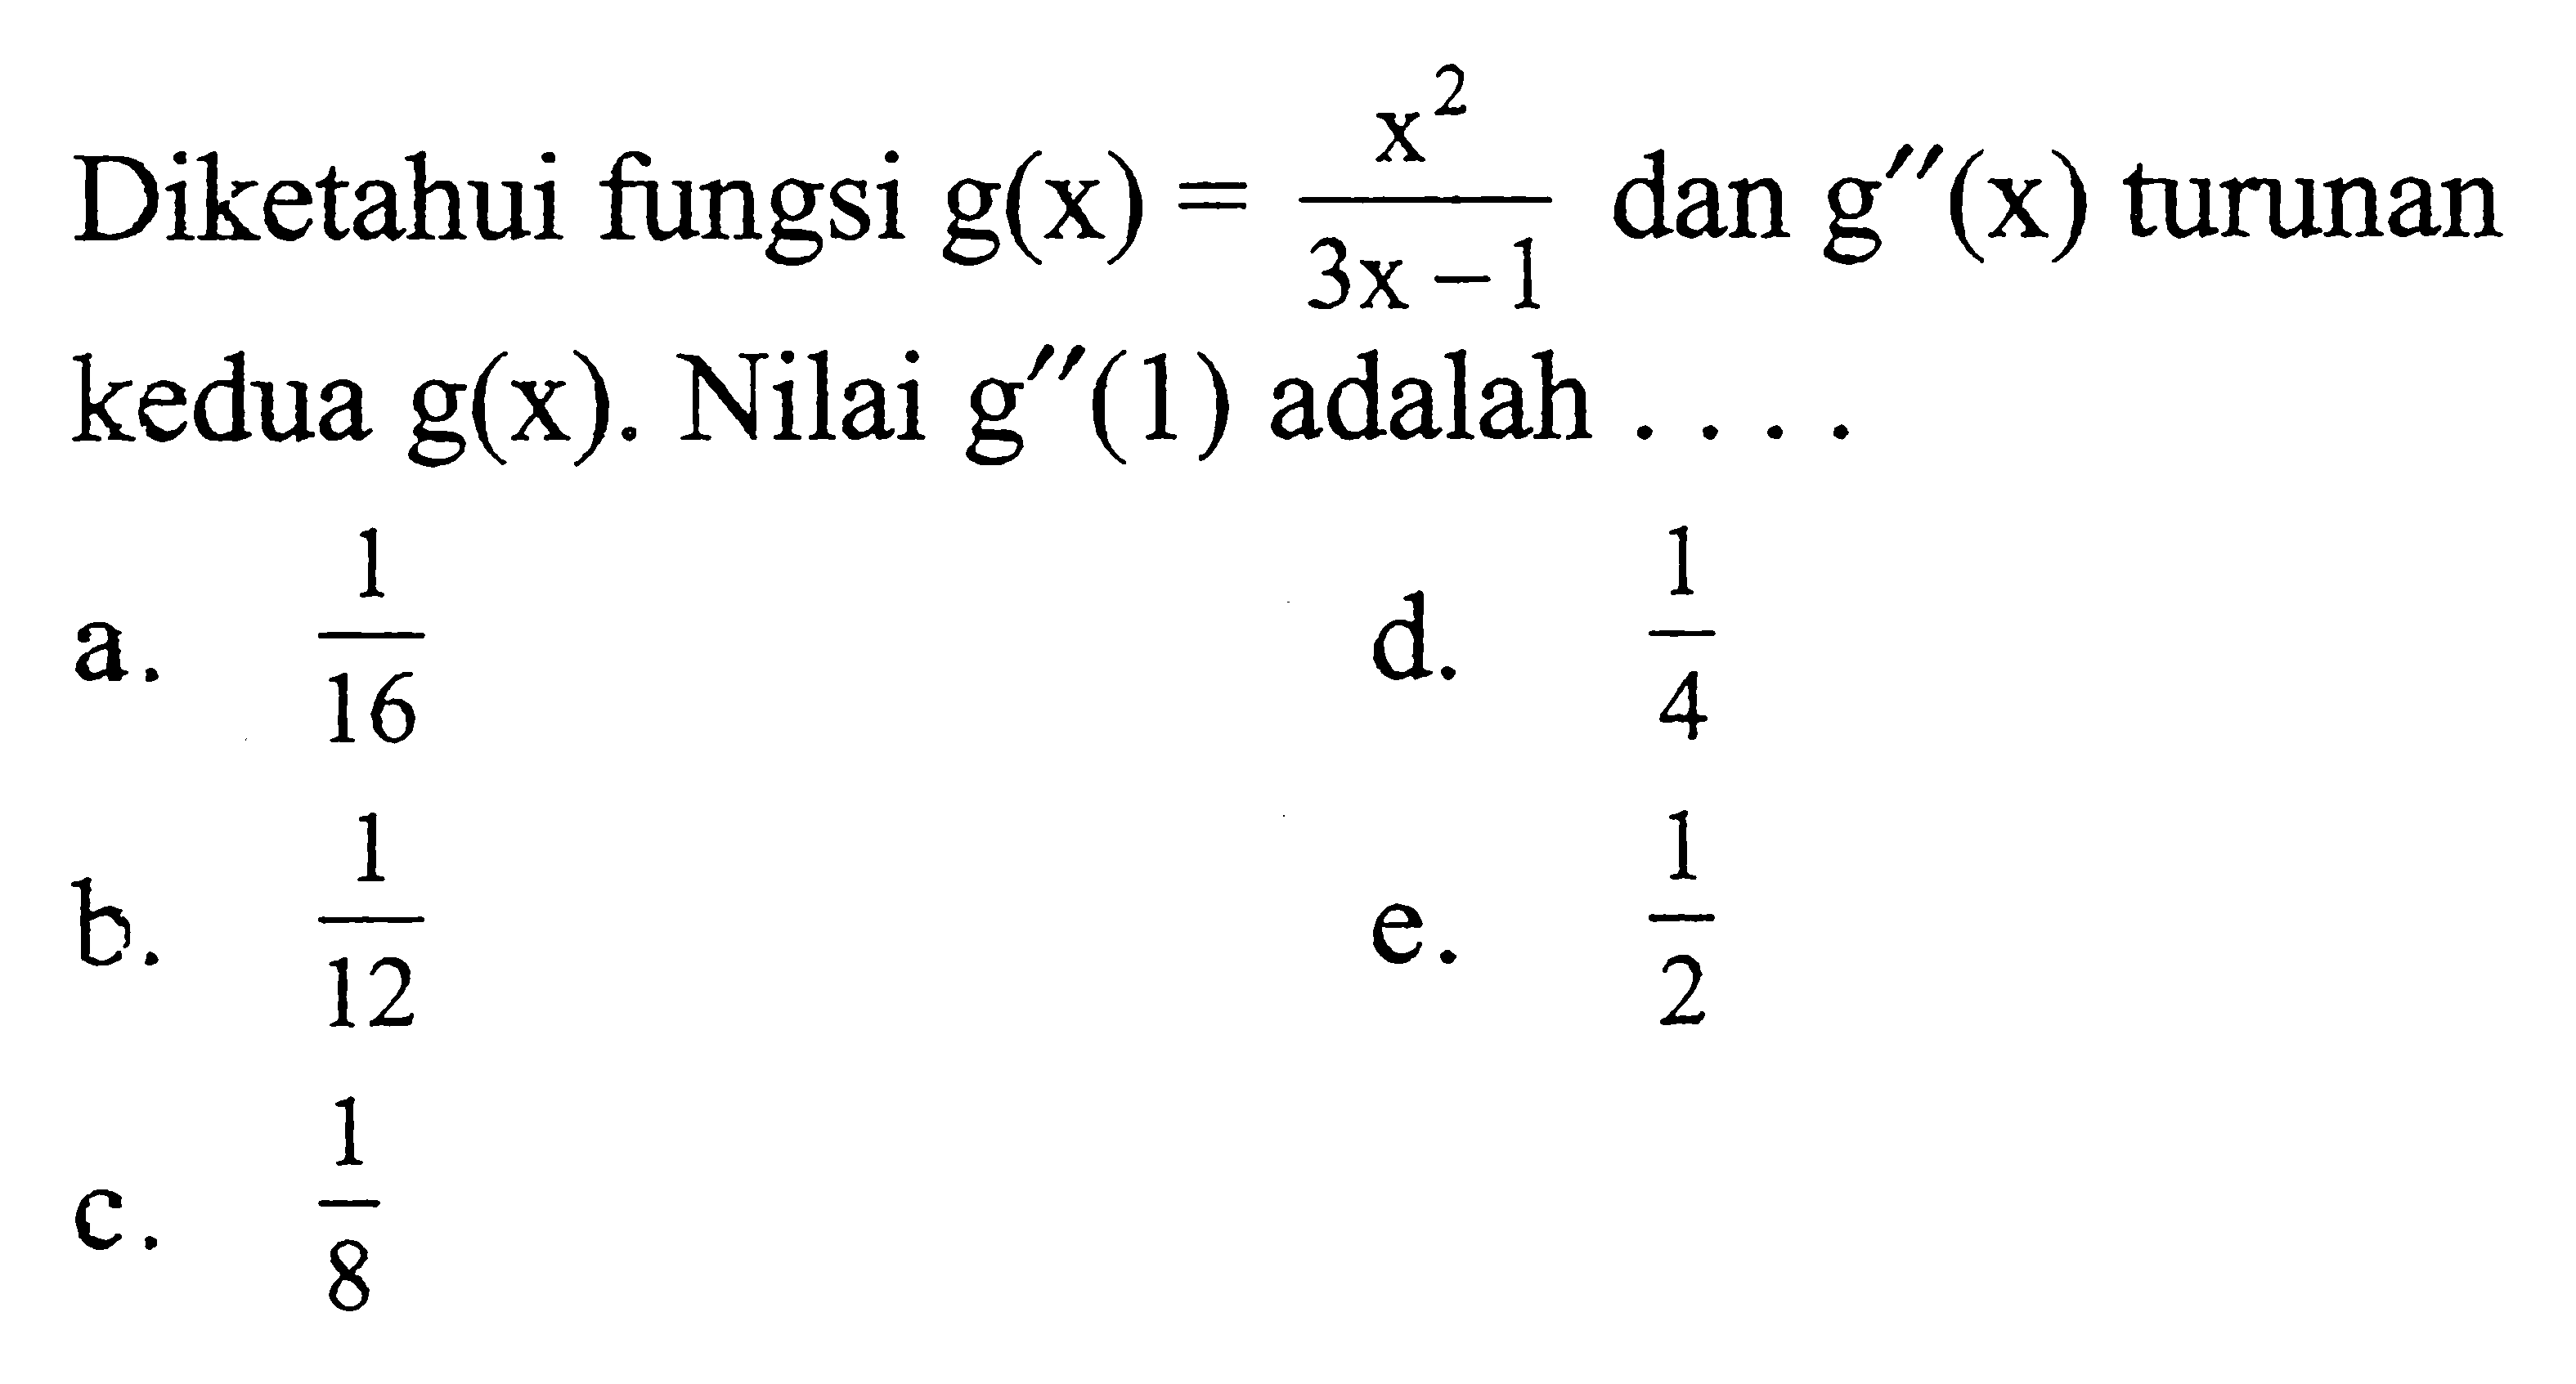 Diketahui fungsi g(x)=x^2/(3x-1) dan g'(x) turunan kedua g(x). Nilai g'(1) adalah ....